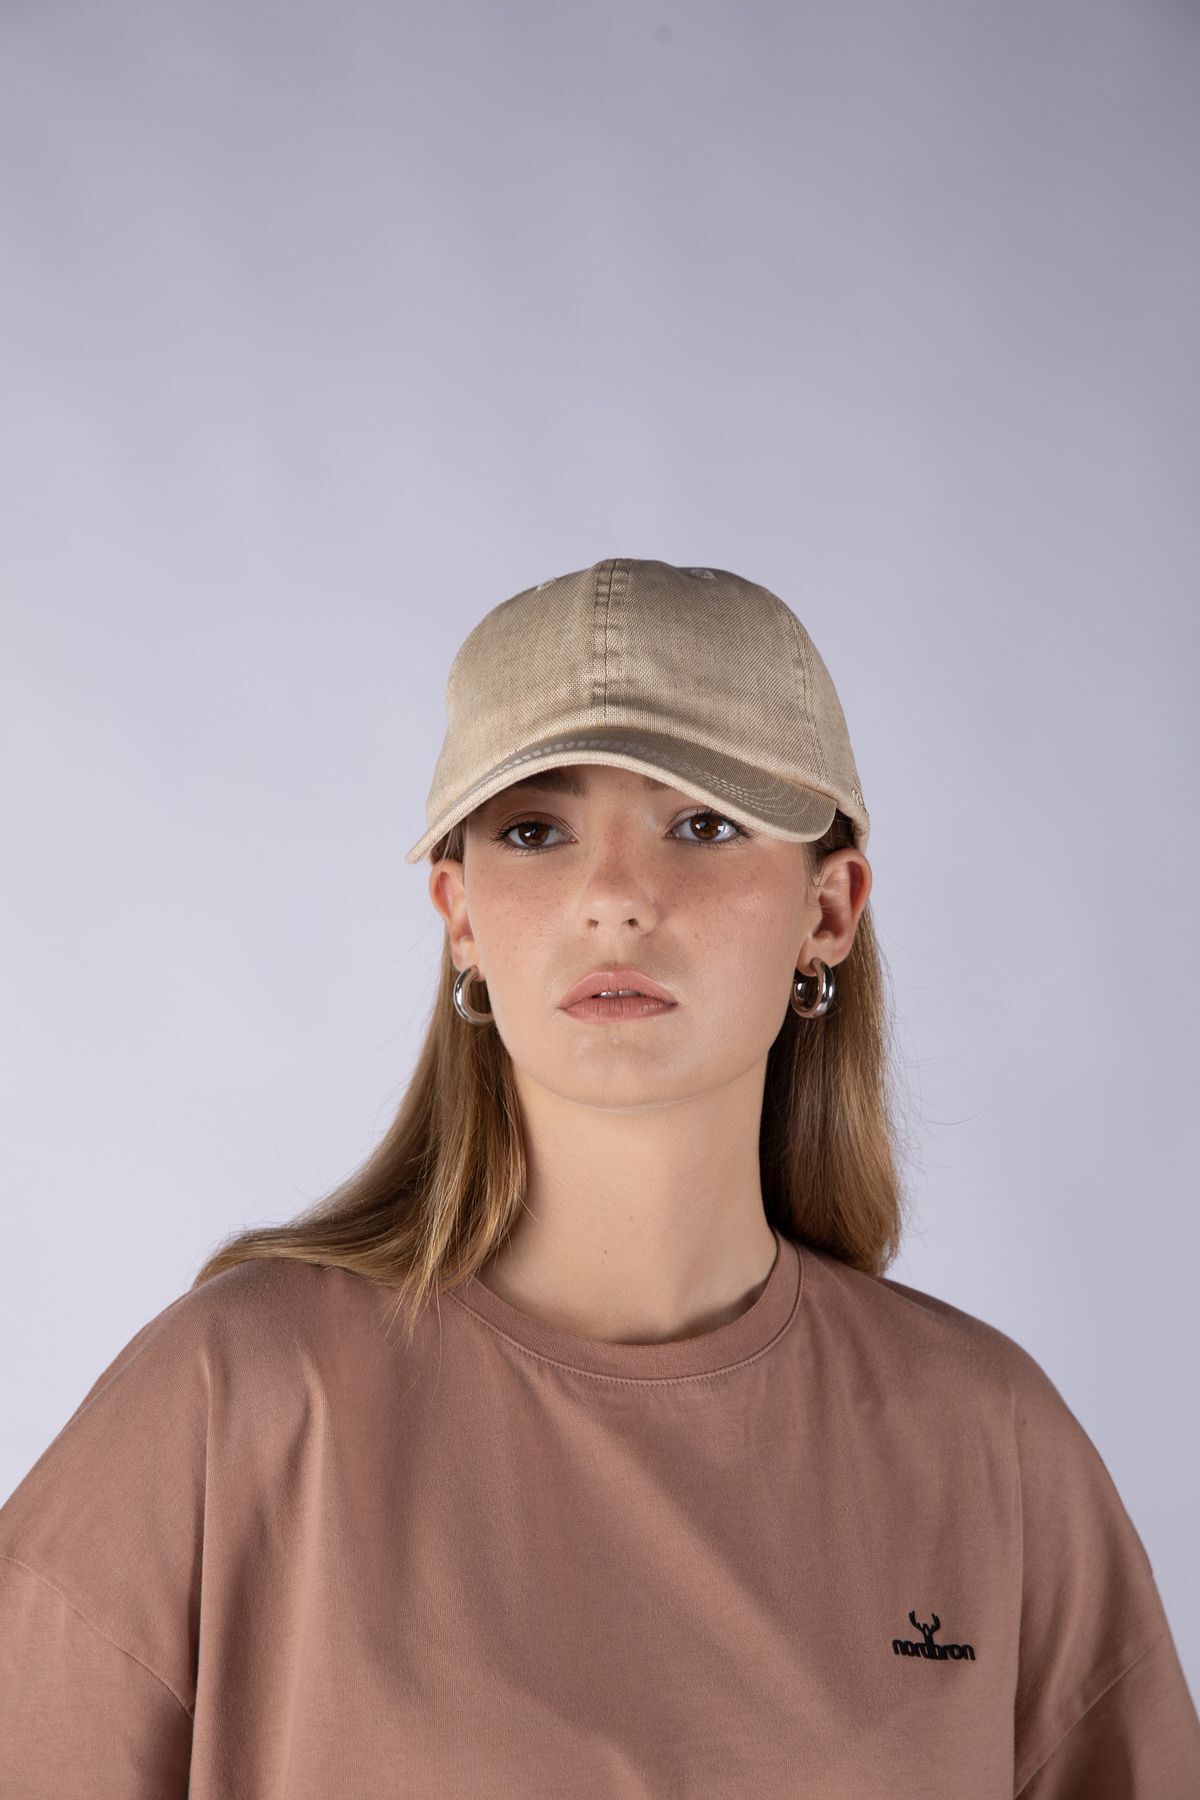 Nordbron Unisex Yağ Yeşili Keten Yazlık Terletmez Kep Şapka Ayarlanabilir Detaylı Pamuk İç Astar Bethnal